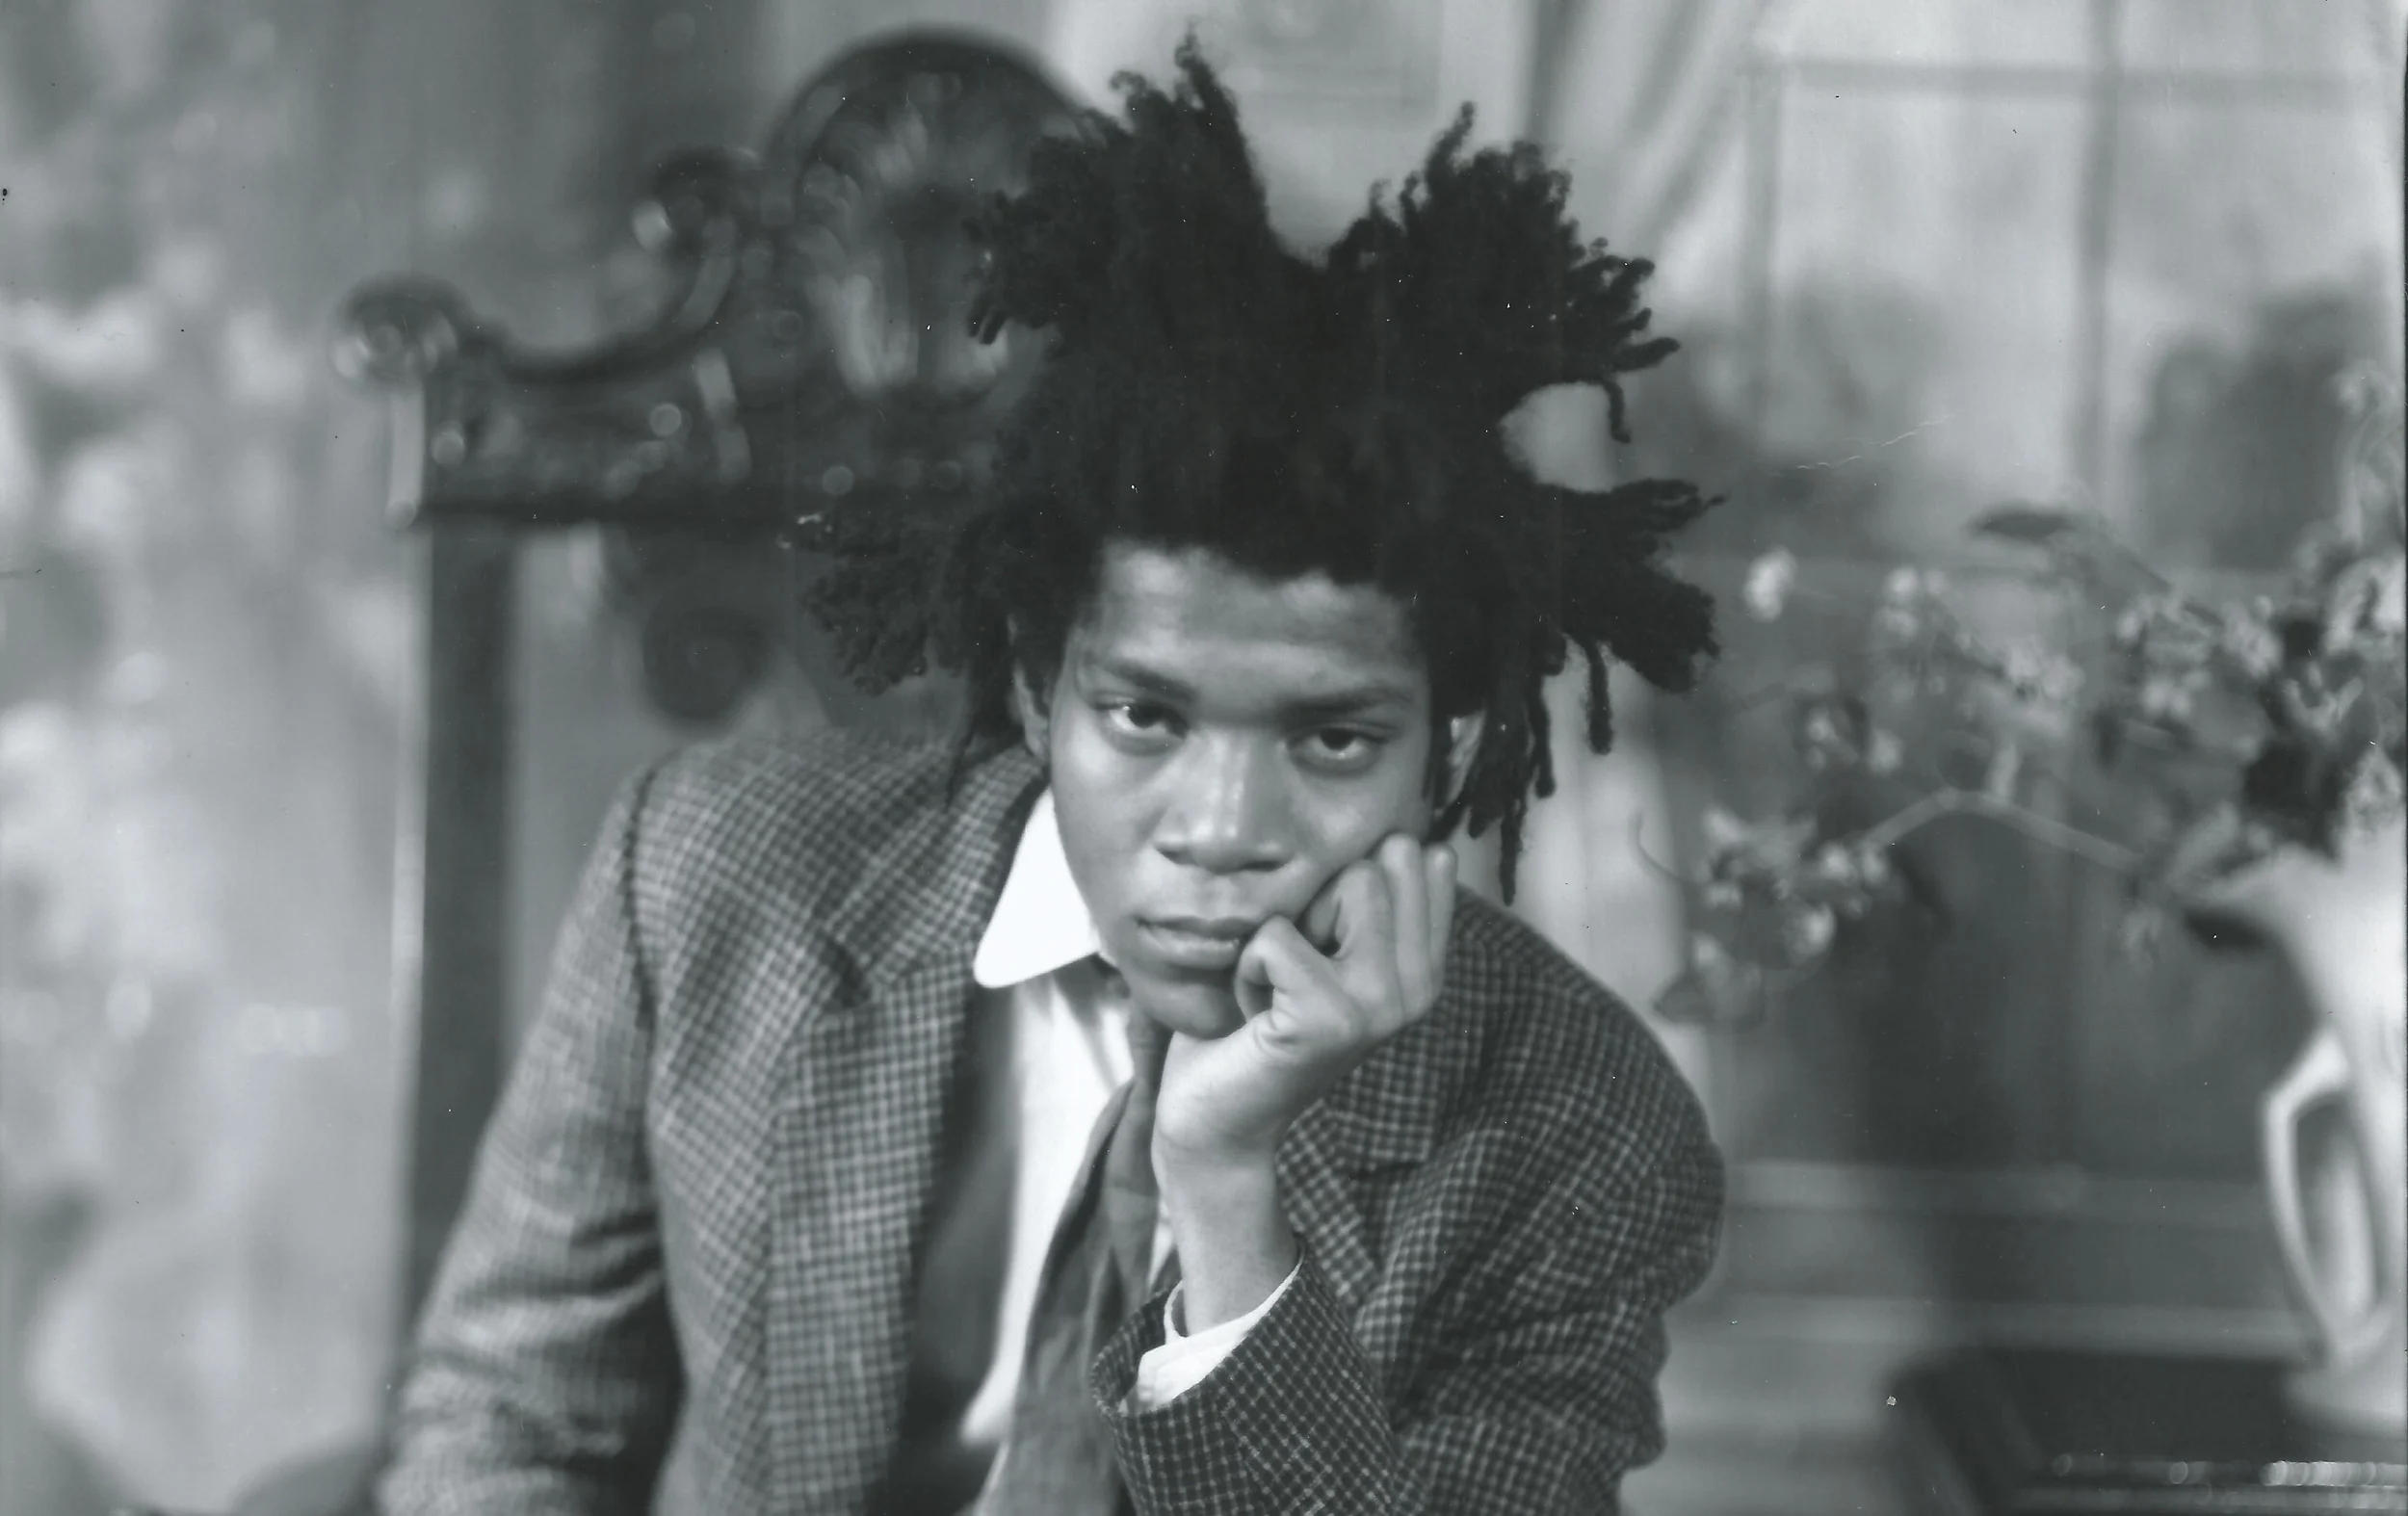 Header image: Crop of Jean-Michel Basquiat, 1982. ©1983 Van Der Zee. All images: © The Estate of Jean-Michel Basquiat